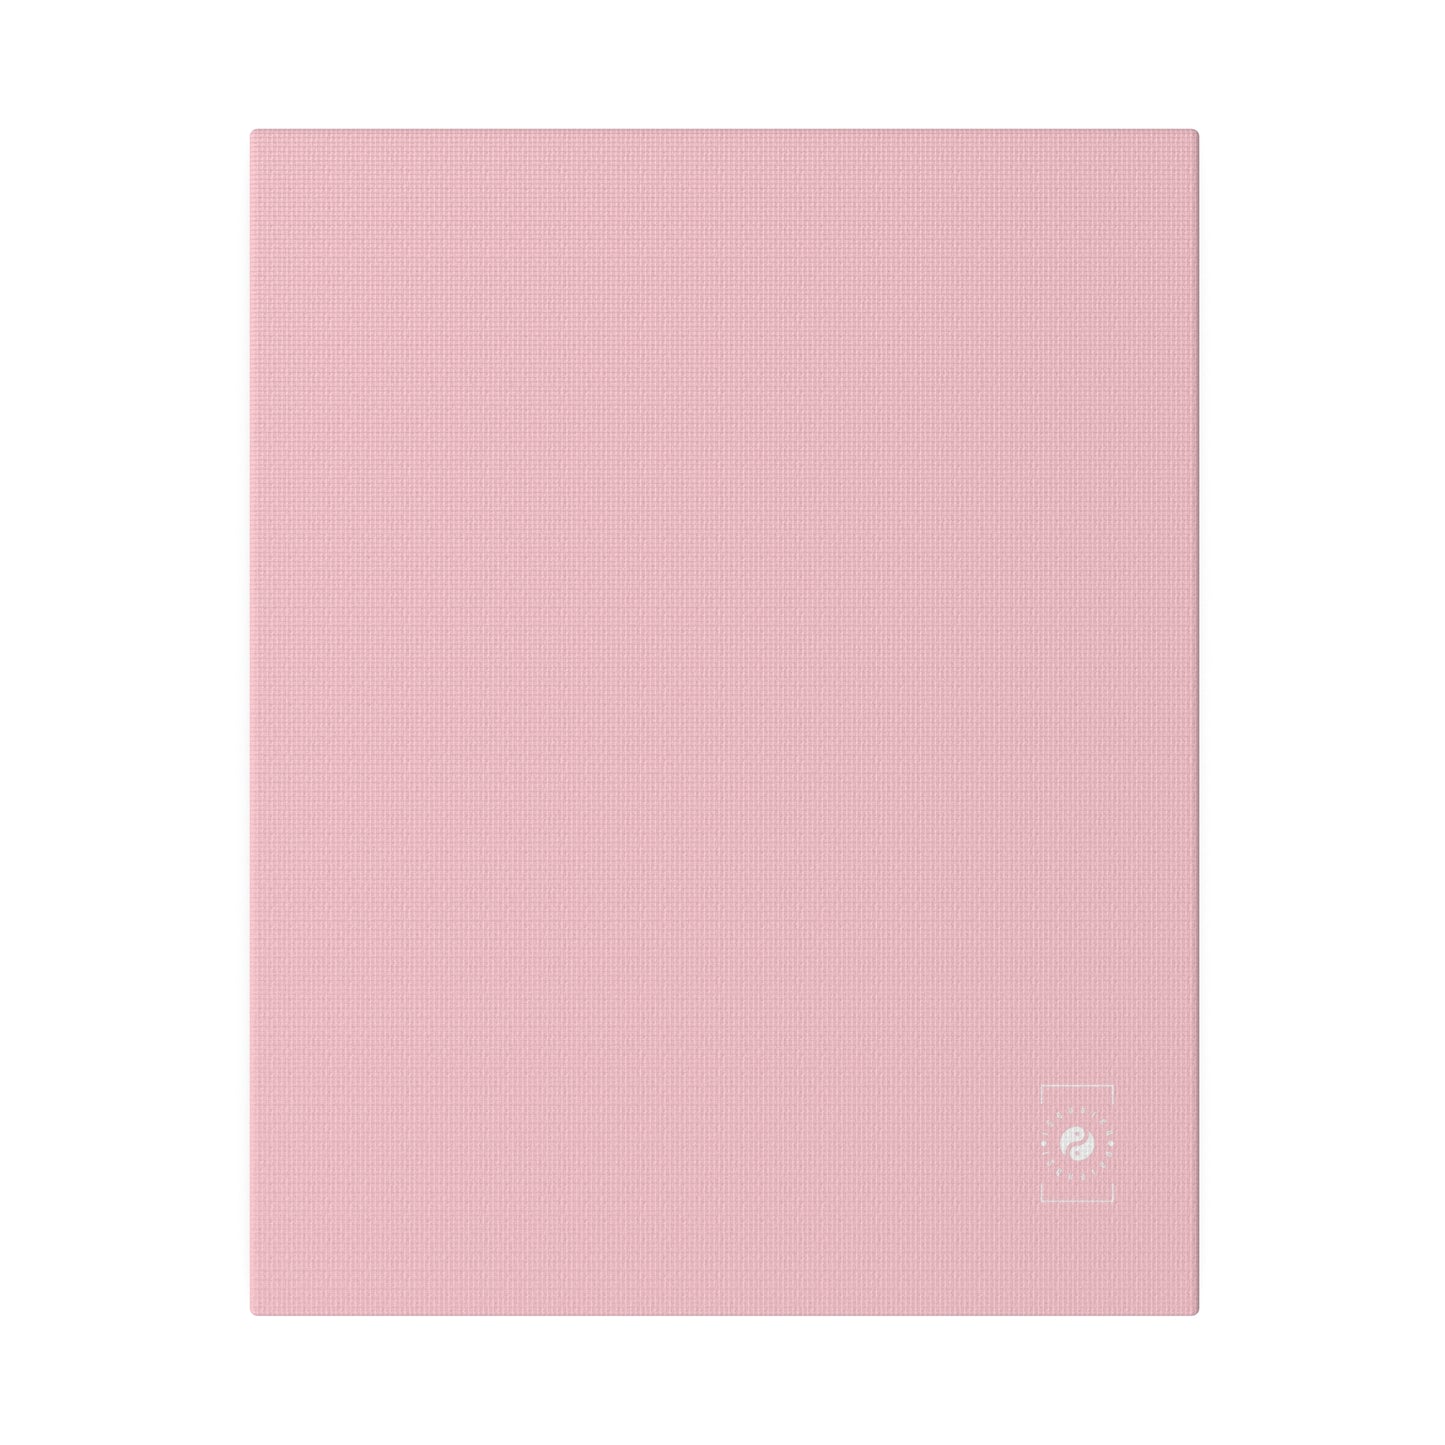 FFCCD4 Light Pink - Art Print Canvas